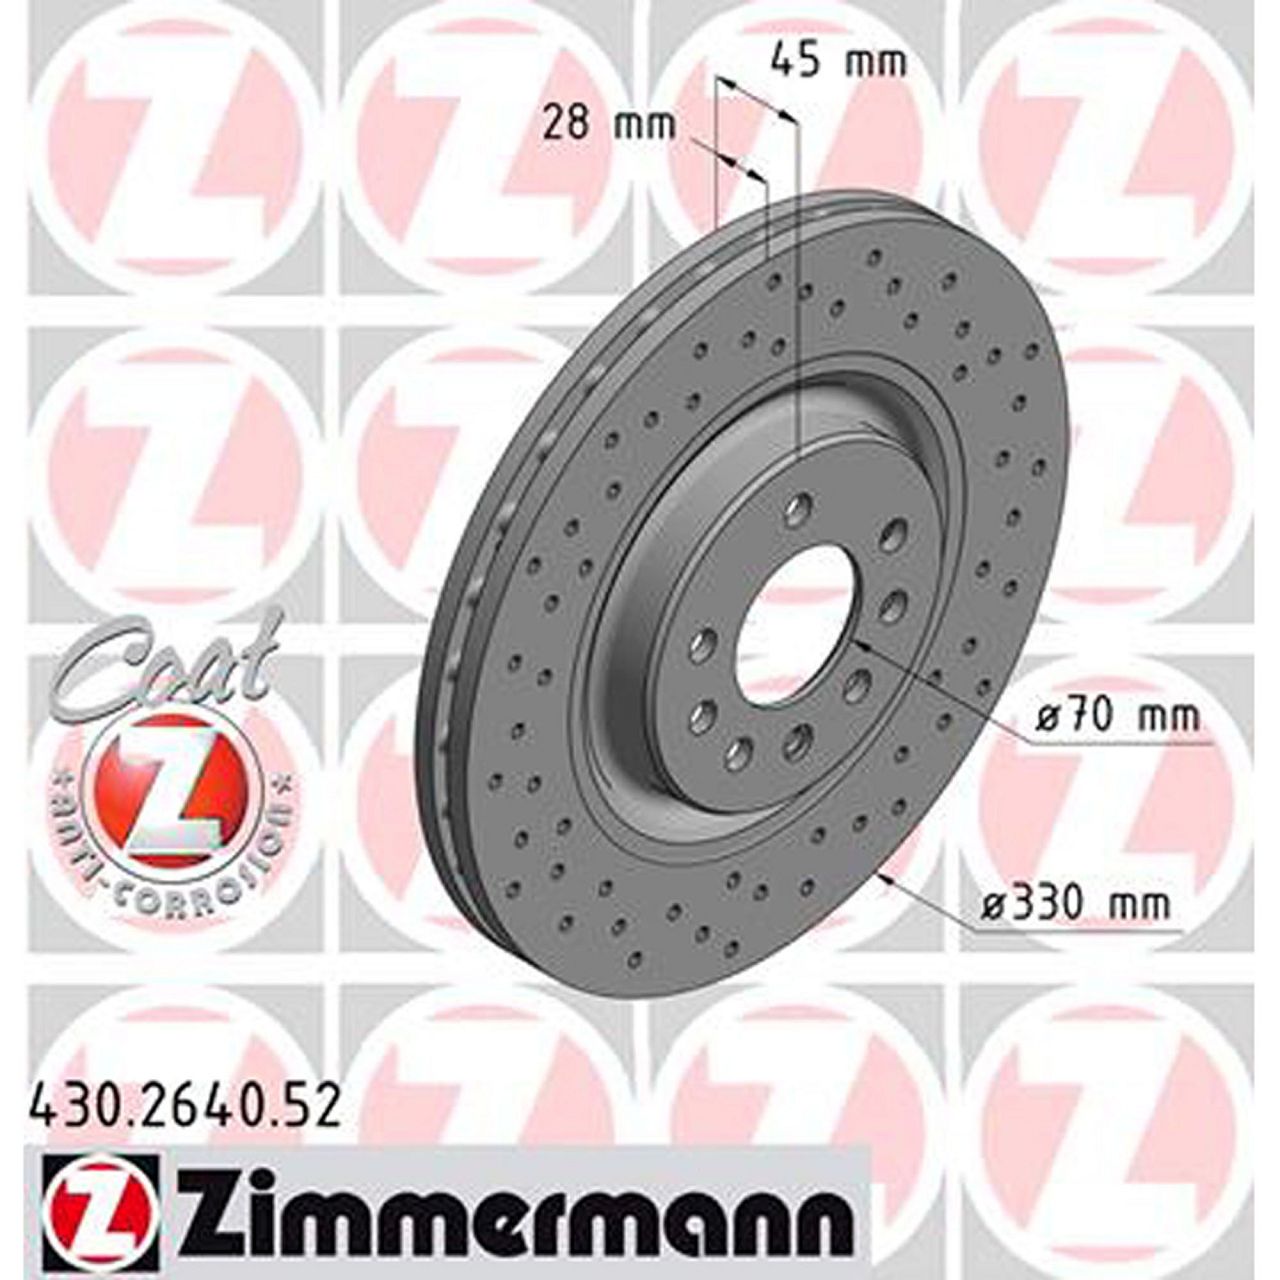 Zimmermann SPORT Bremsscheiben + Bremsbeläge OPEL Corsa E 1.6 Turbo OPC 17 Zoll vorne